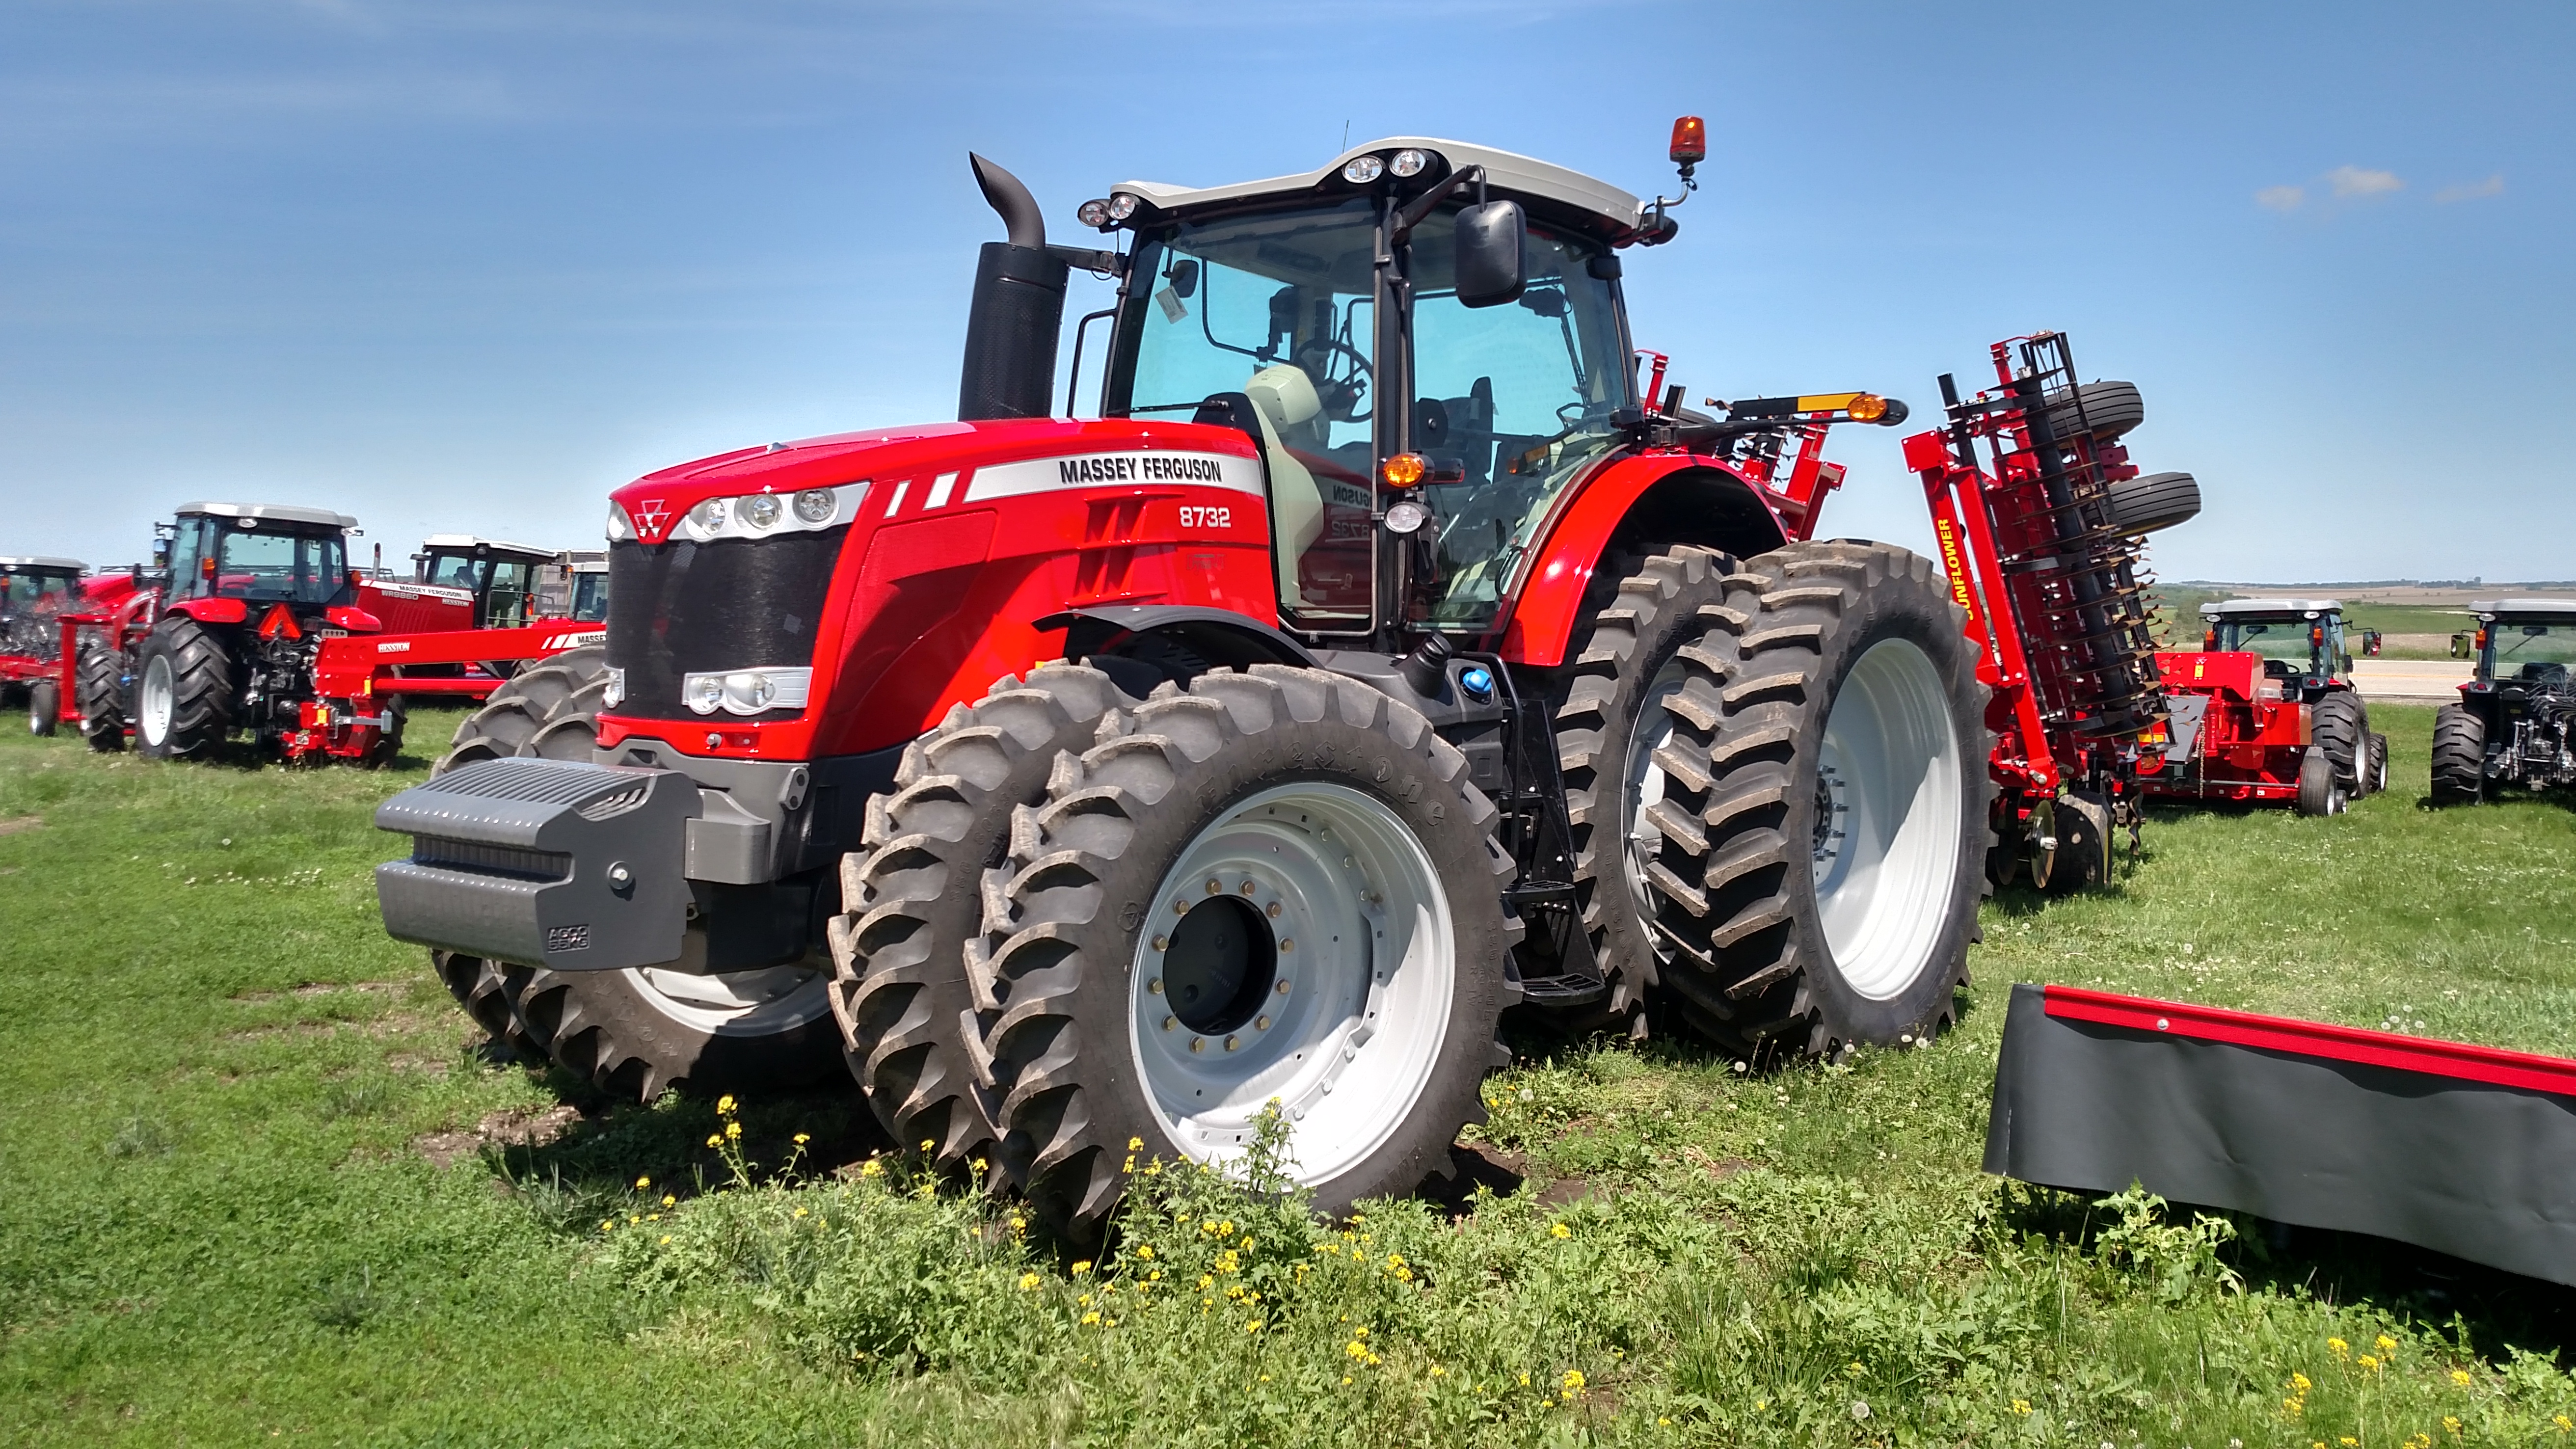 NEW MASSEY FERGUSON 8732 High Horsepower Tractor - Merz Farm Equipment